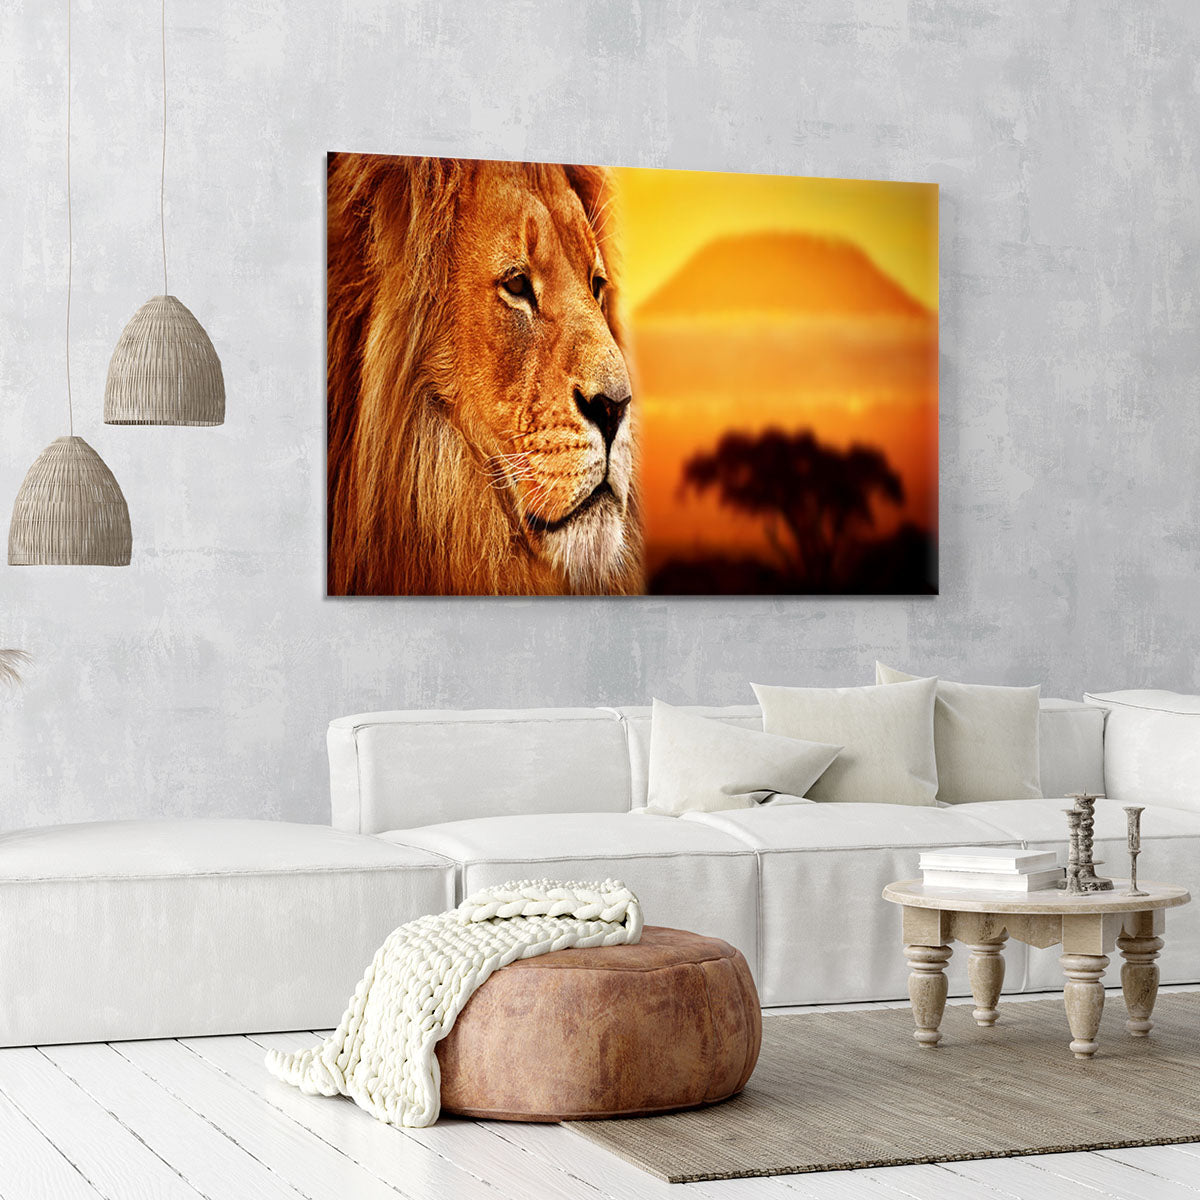 Lion portrait on savanna landscape Canvas Print or Poster - Canvas Art Rocks - 6